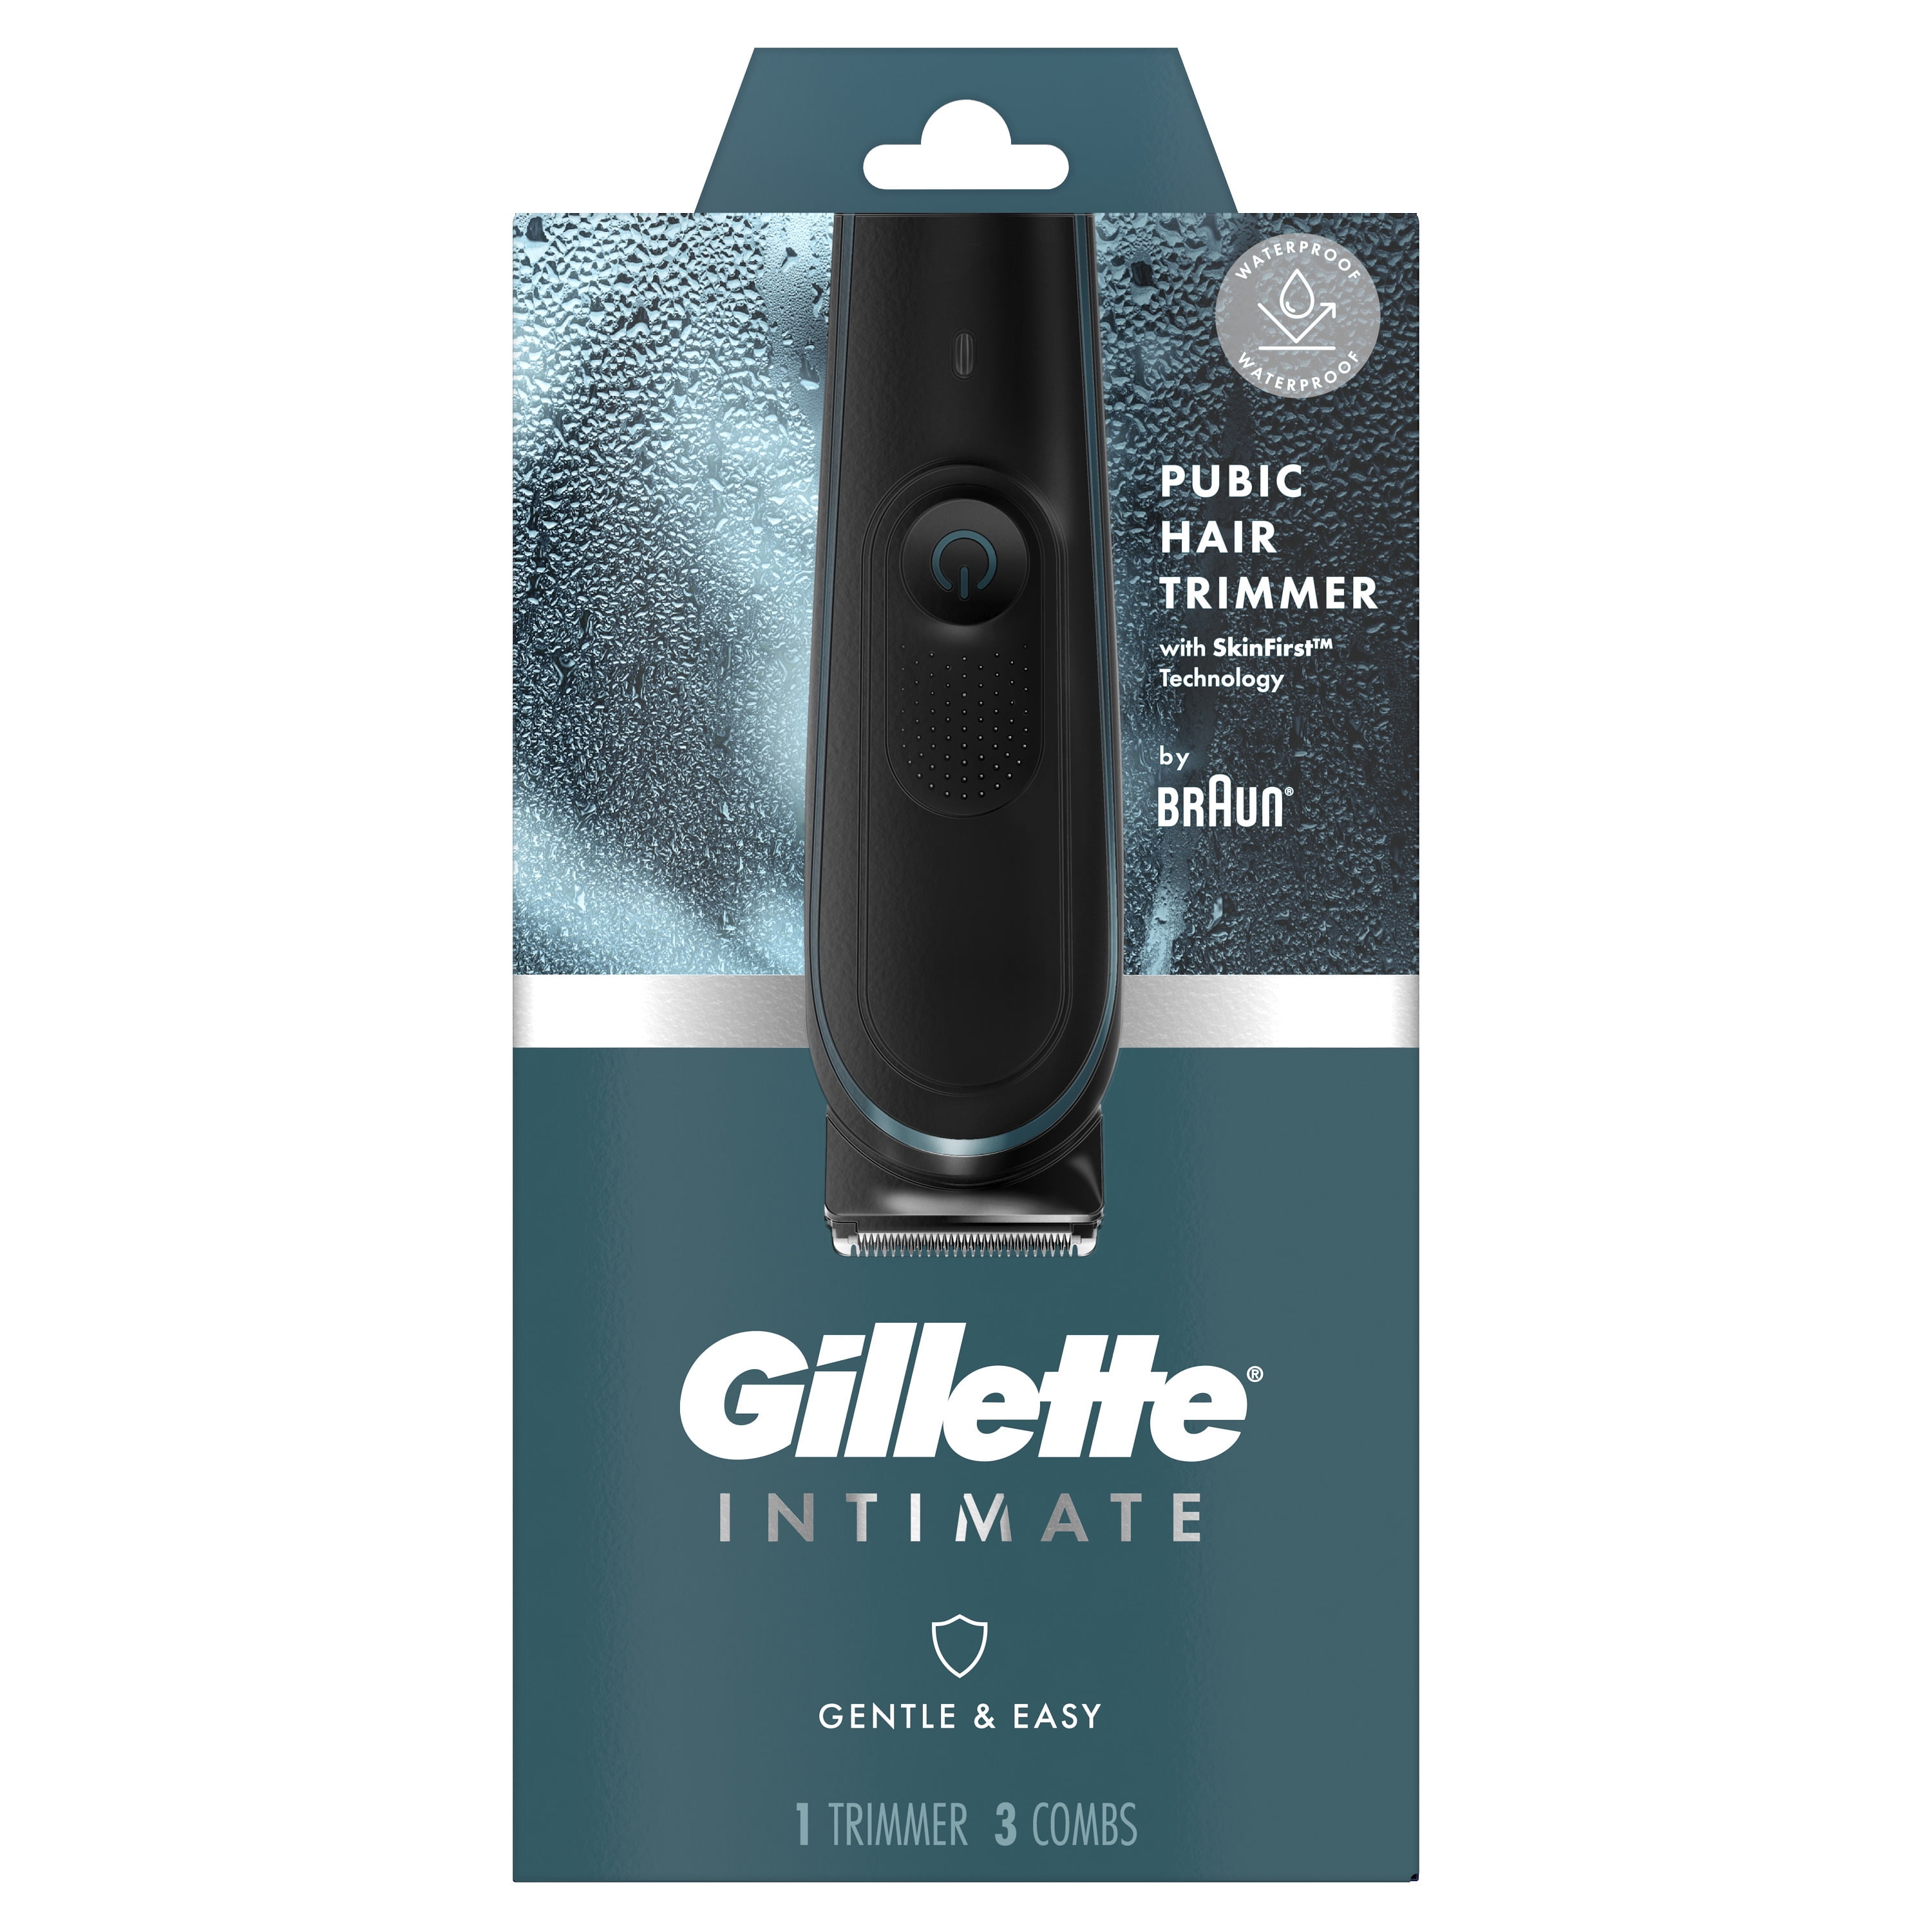  Gillette Intimate Manscape - Maquinilla de afeitar púbica para  hombre, suave y fácil de usar, diseñada para cabello púbico, 1 mango de  afeitar, 2 repuestos de cuchilla de afeitar, maquinilla de 